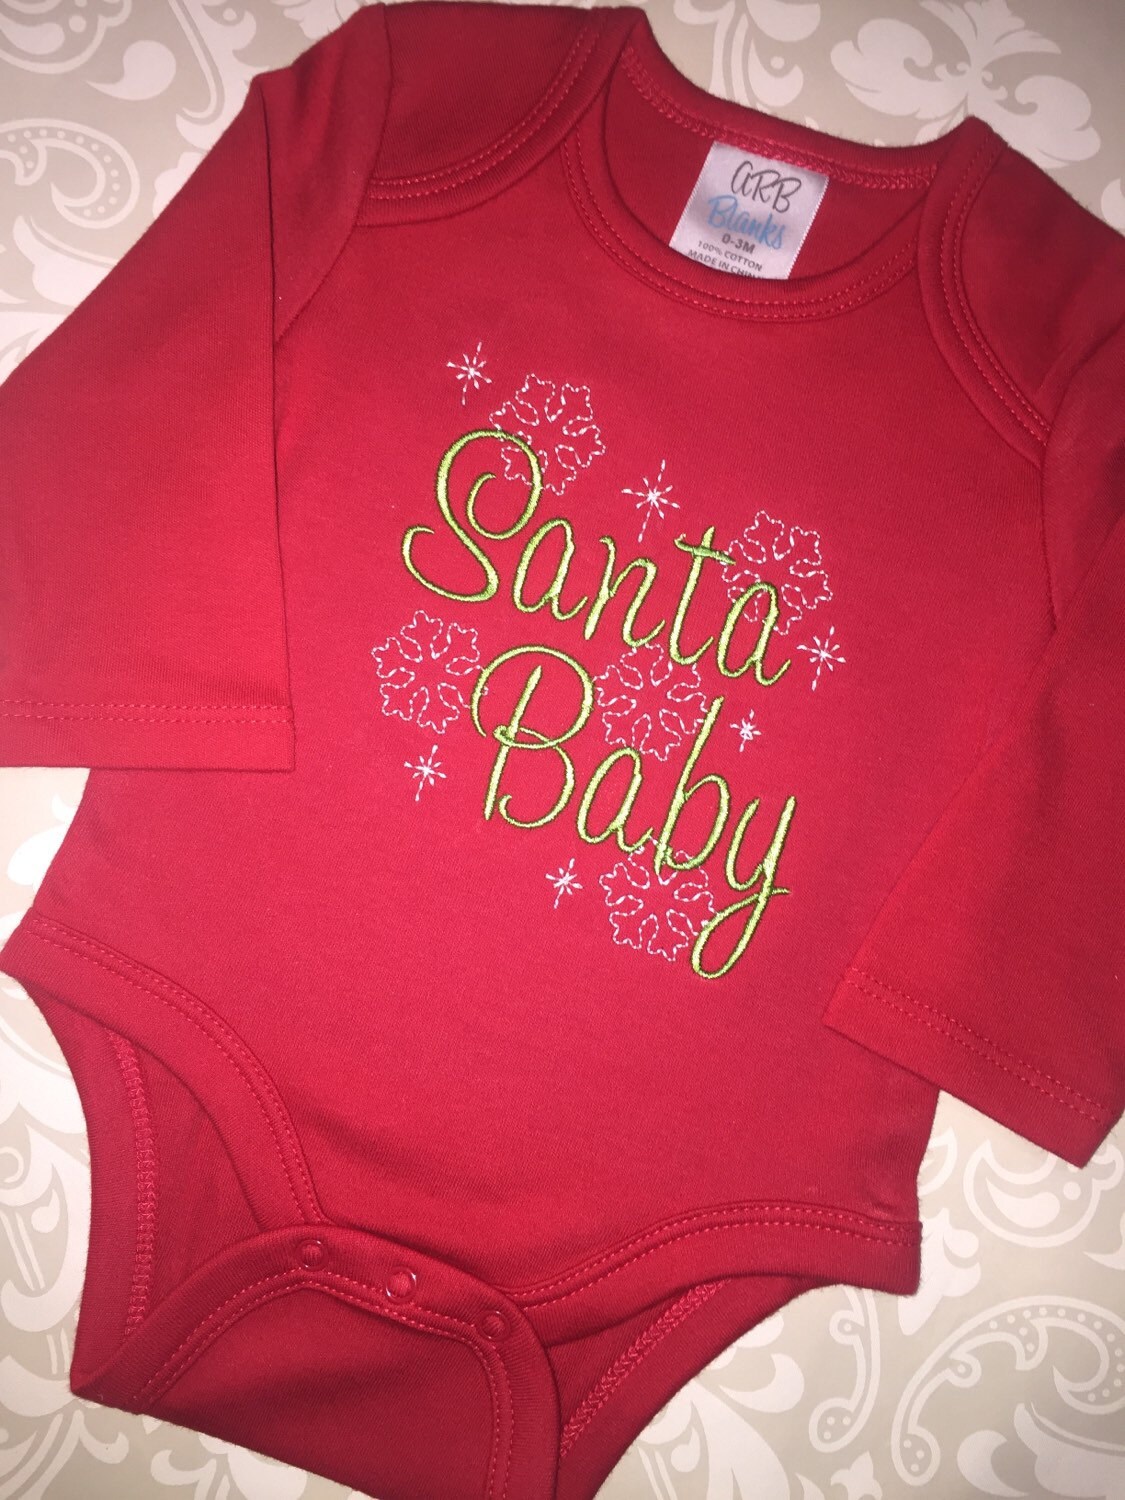 Christmas santa baby bodysuit for infants Santa baby | Etsy